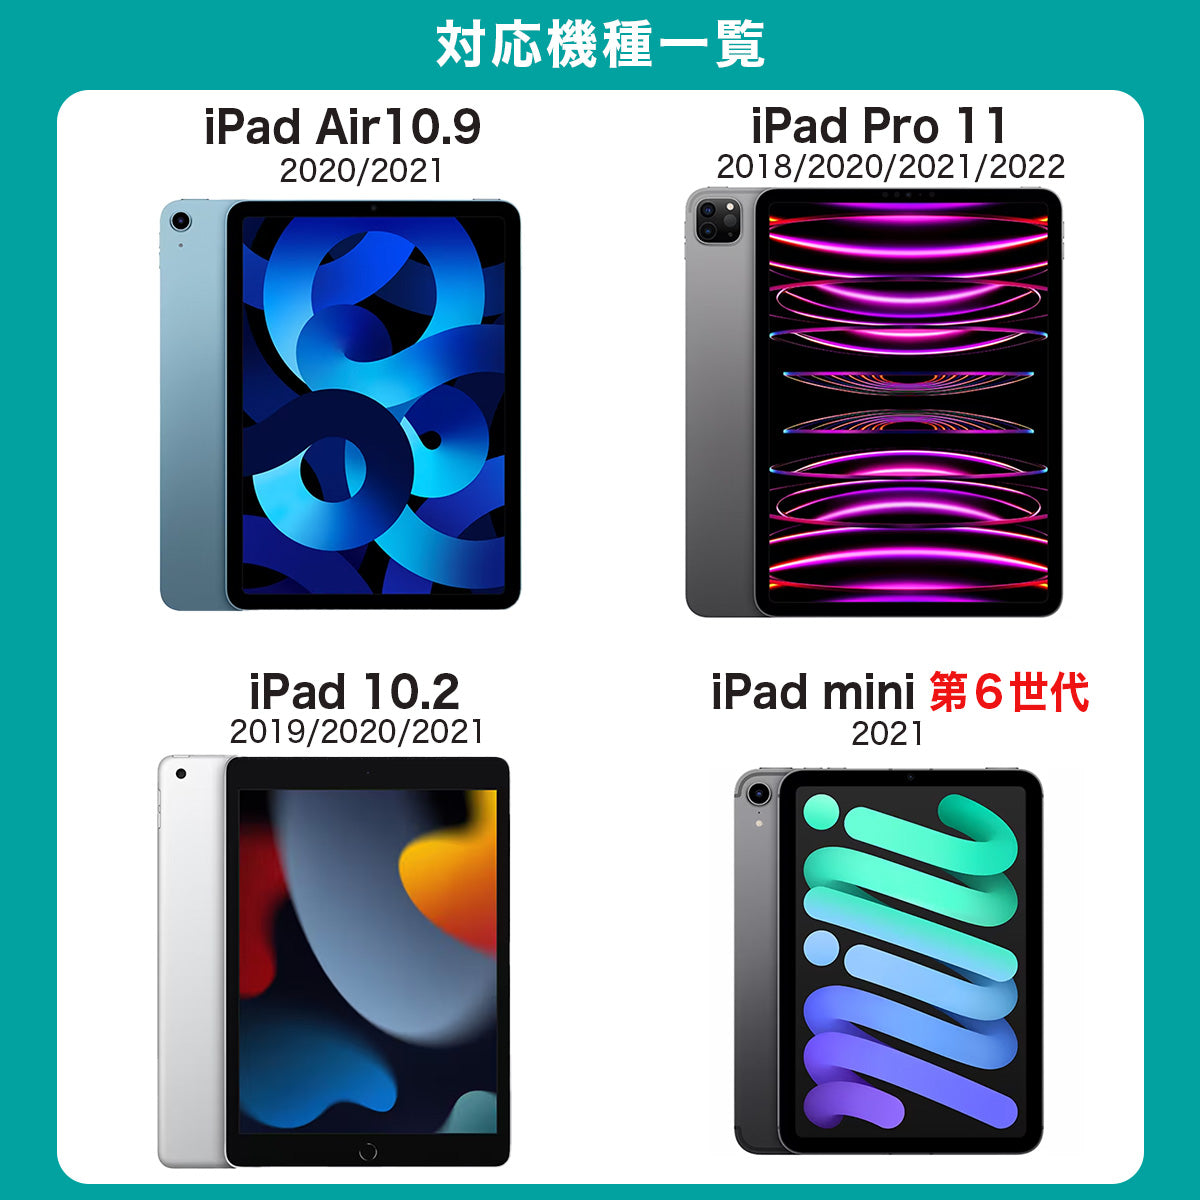 iPadケース タブレットケース オートスリープ iPad 10.2インチ 第10世代 第9世代 iPad mini 8.3インチ 第6世代 iPad Air 10.9インチ 第5世代